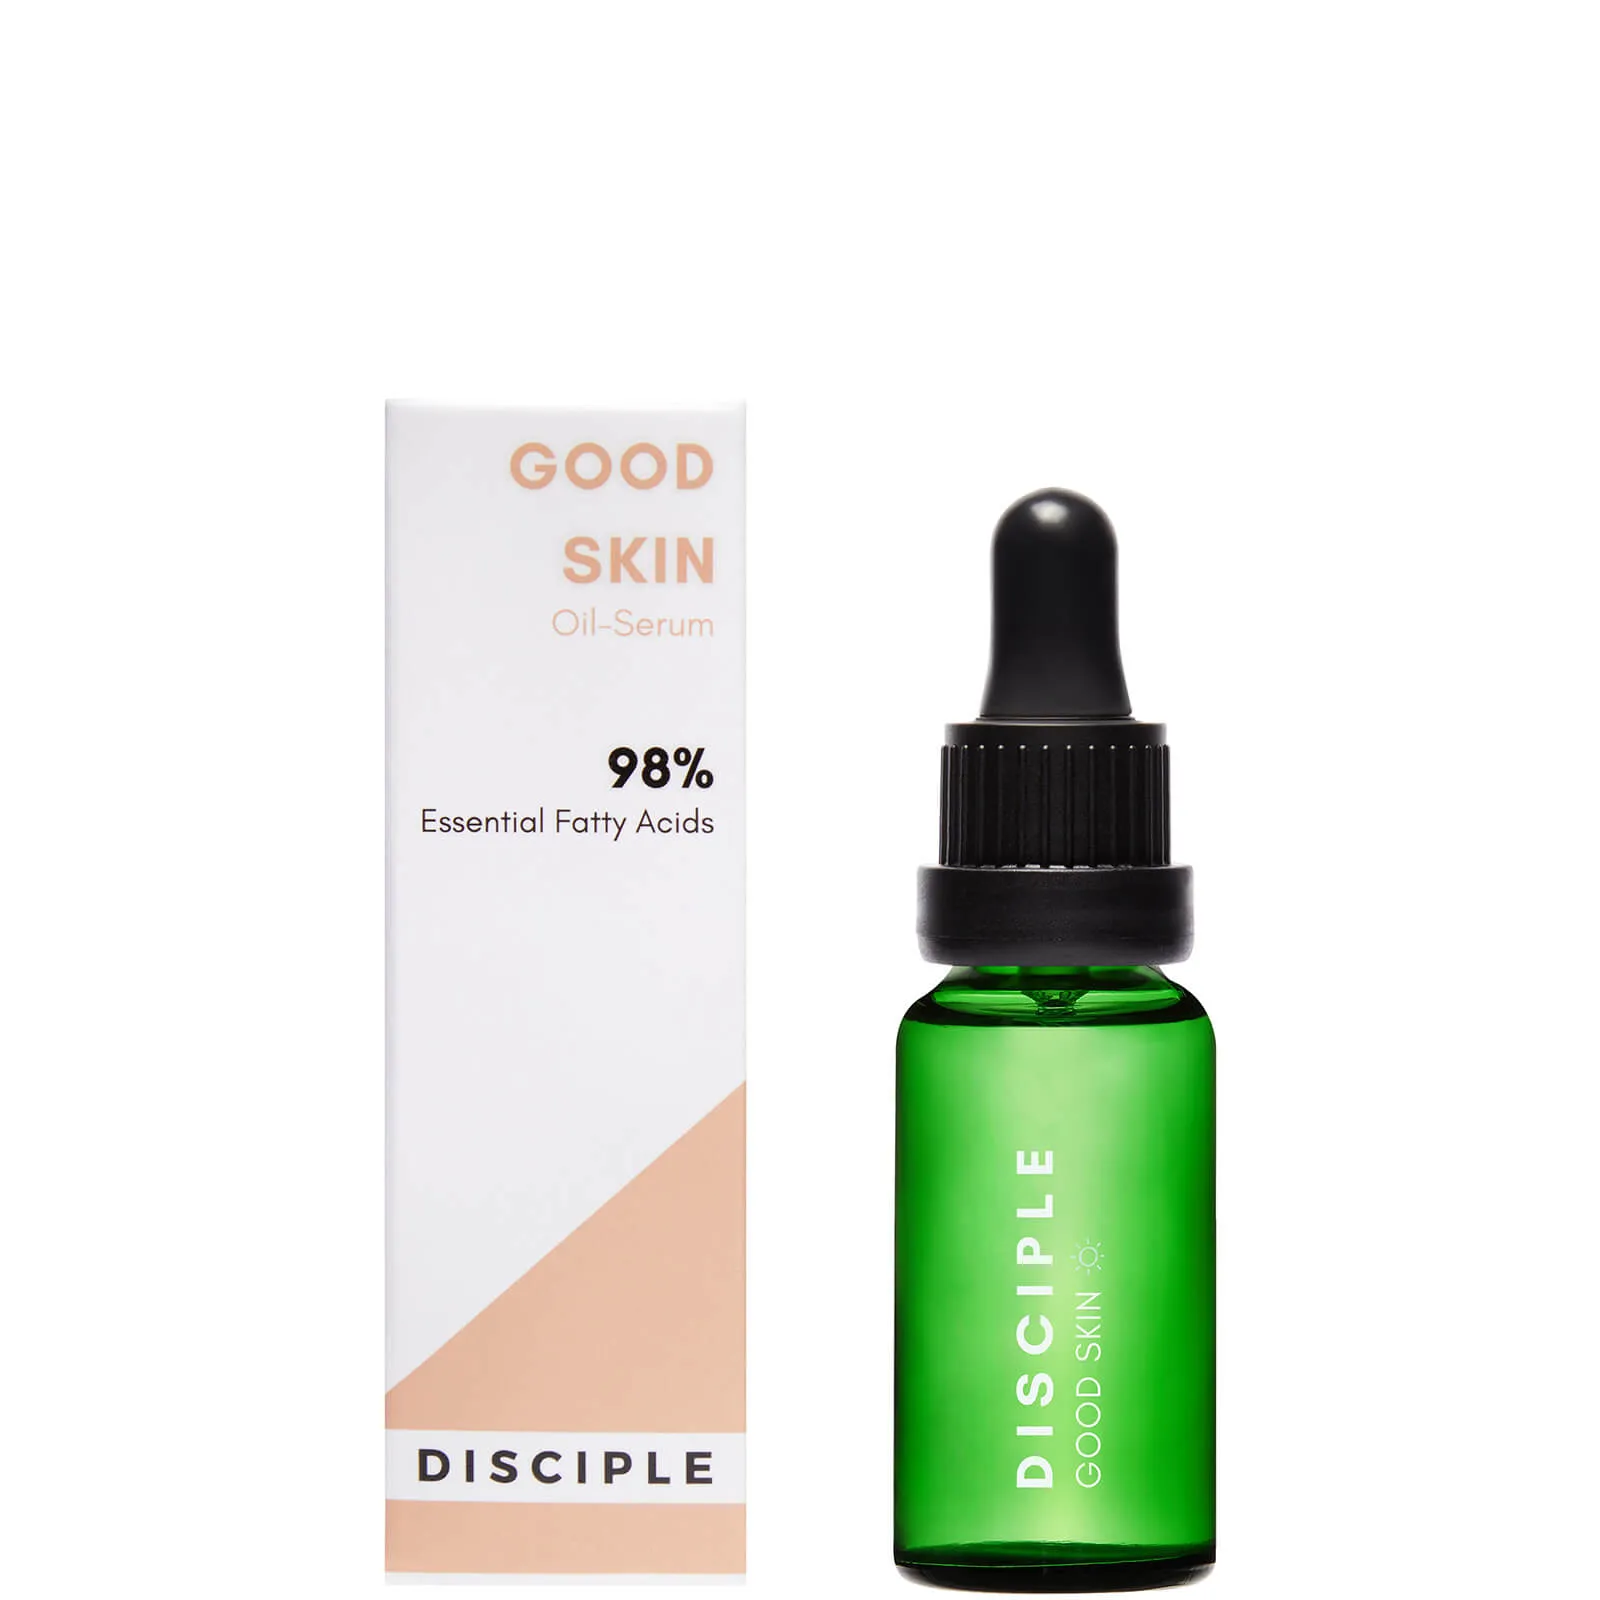 Disciple Good Skin Face Olio-Siero 20Ml